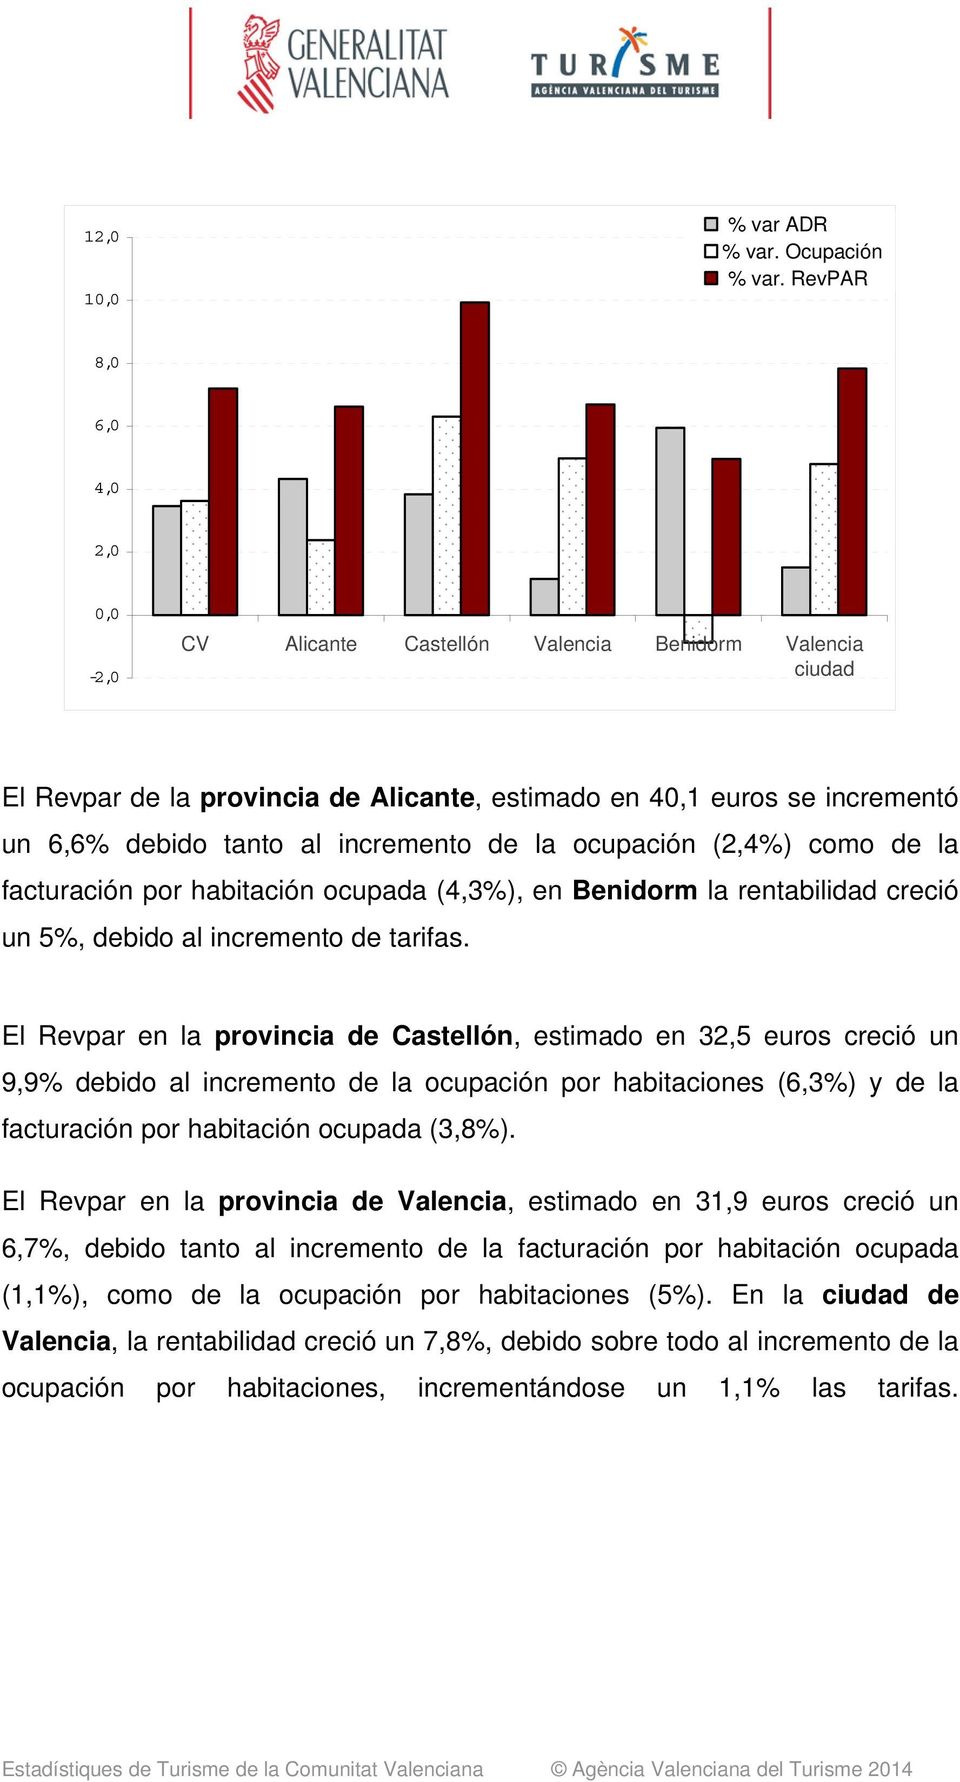 la ocupación (2,4) como de la facturación por habitación ocupada (4,3), en Benidorm la rentabilidad creció un 5, debido al incremento de tarifas.